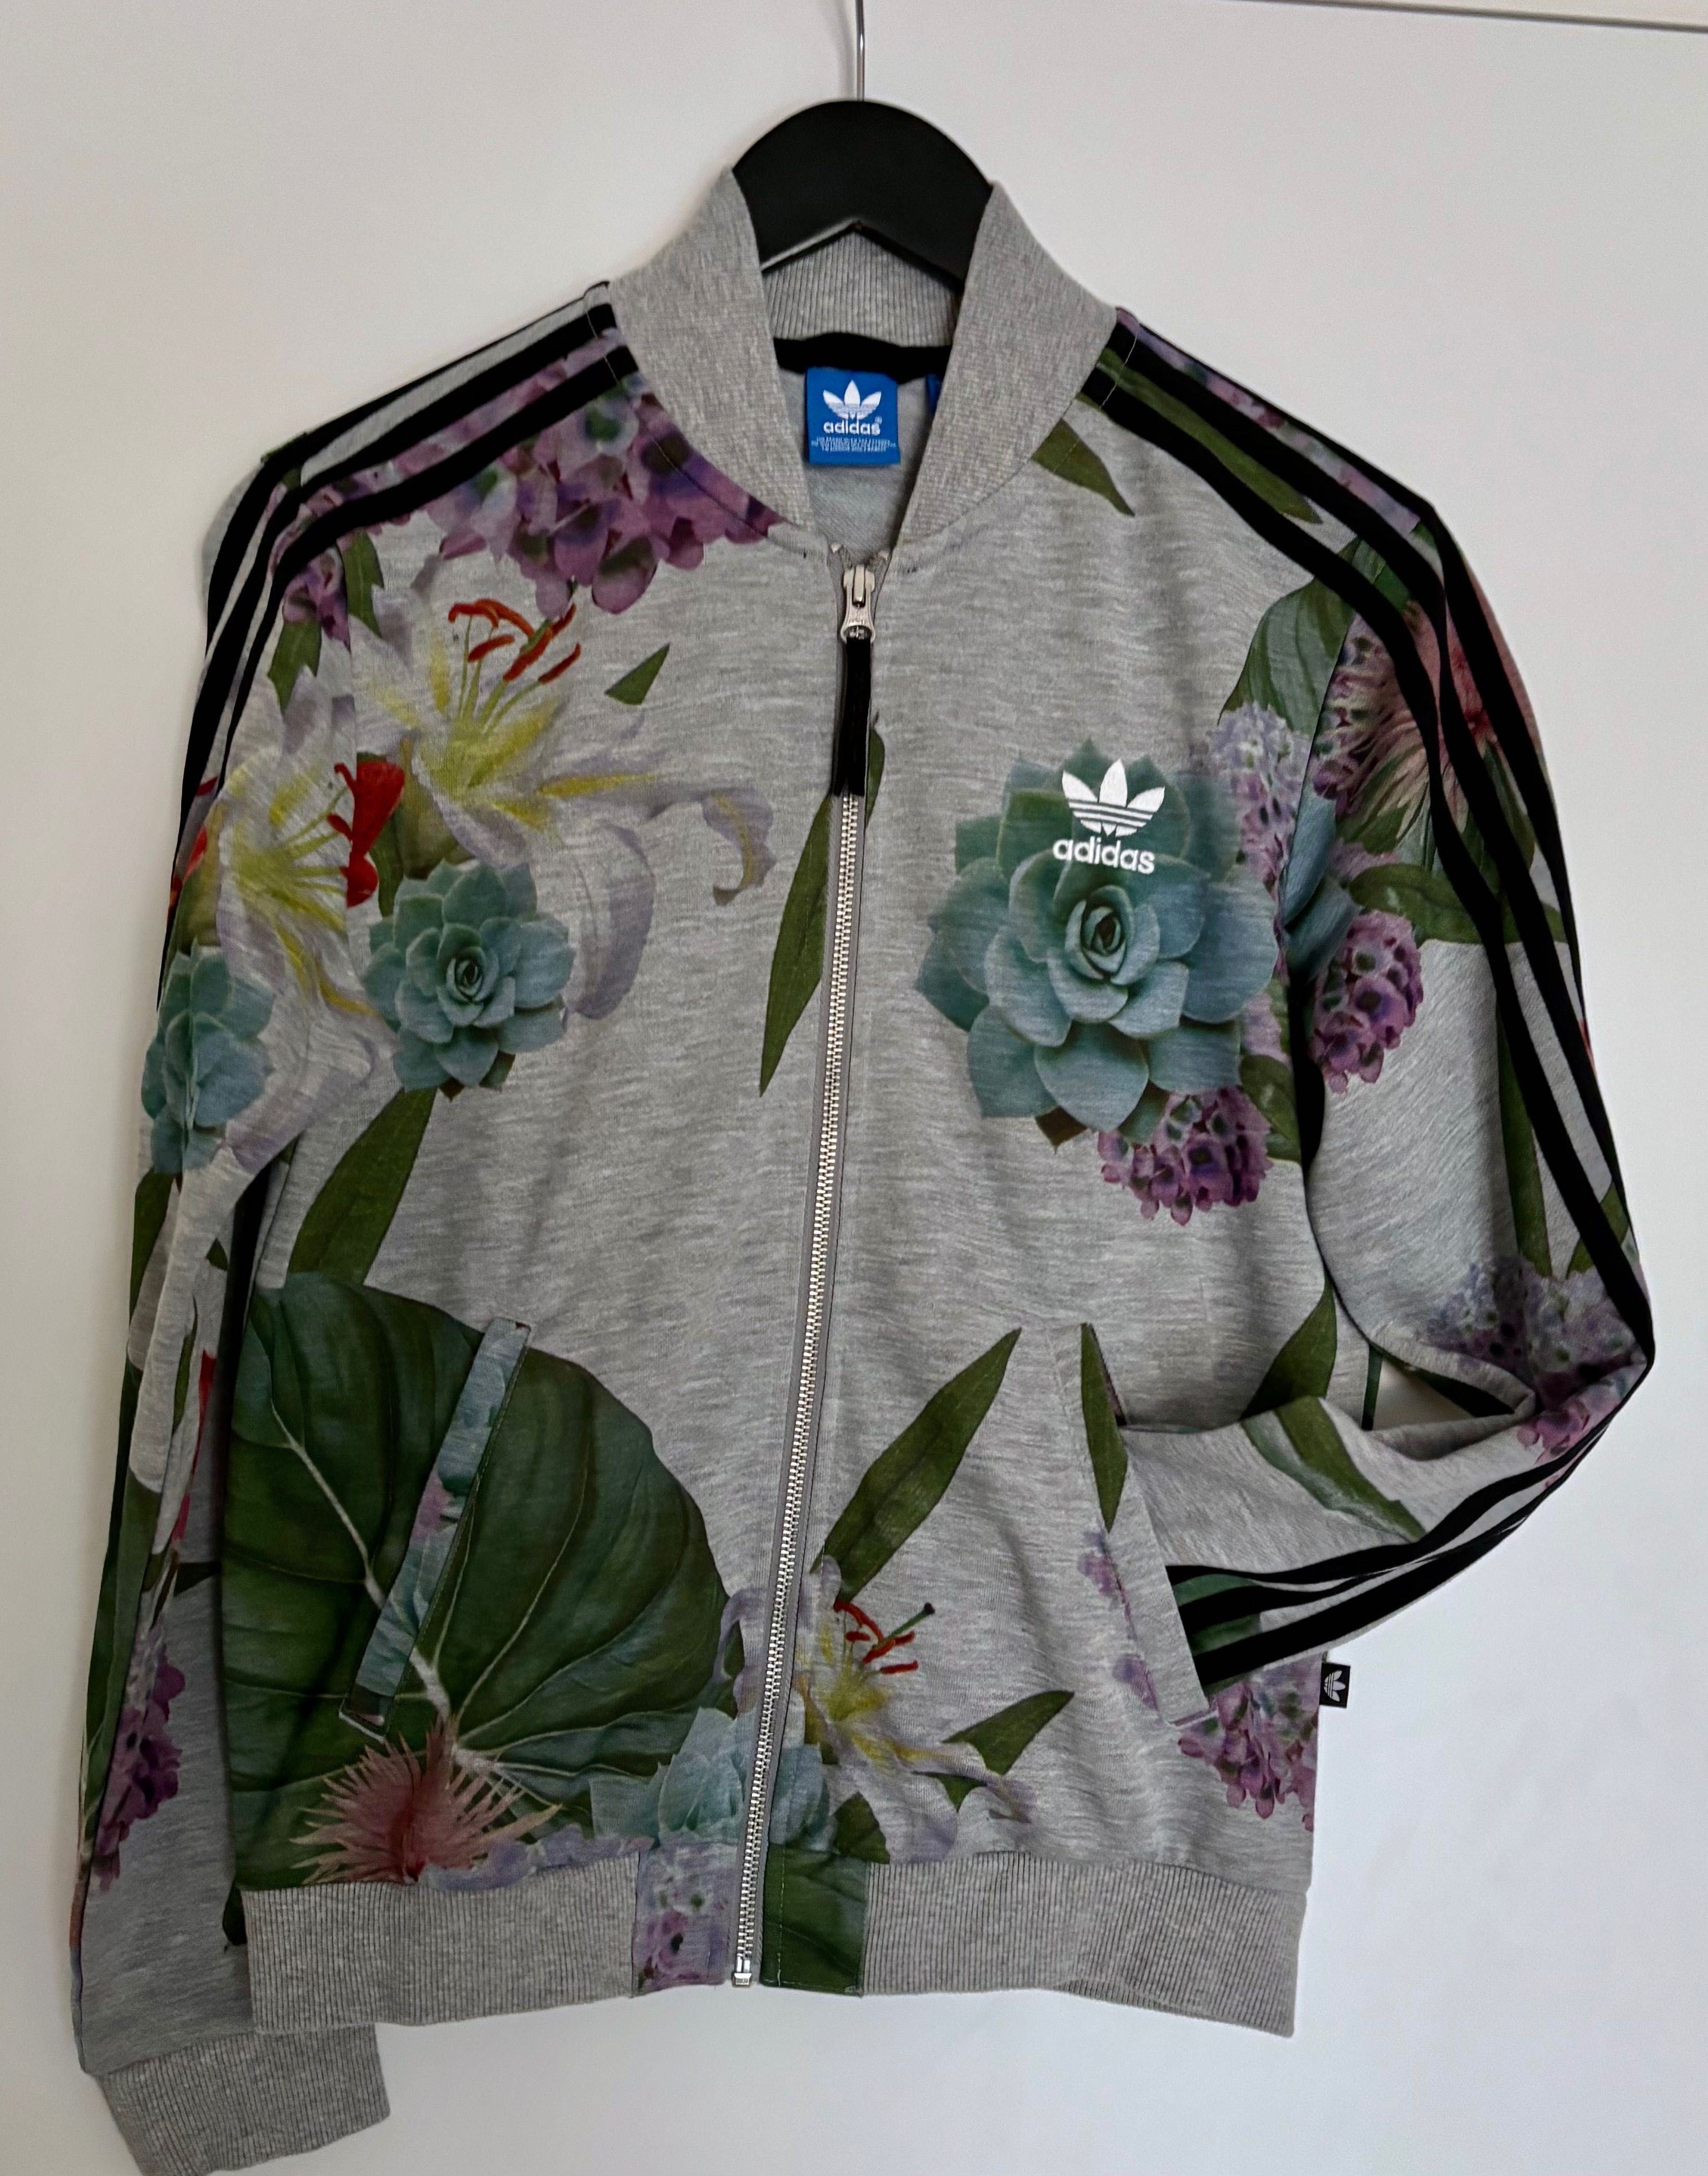 Bluza damska adidas kwiaty, kwiatowy print, wzór  rozmiar 36 38